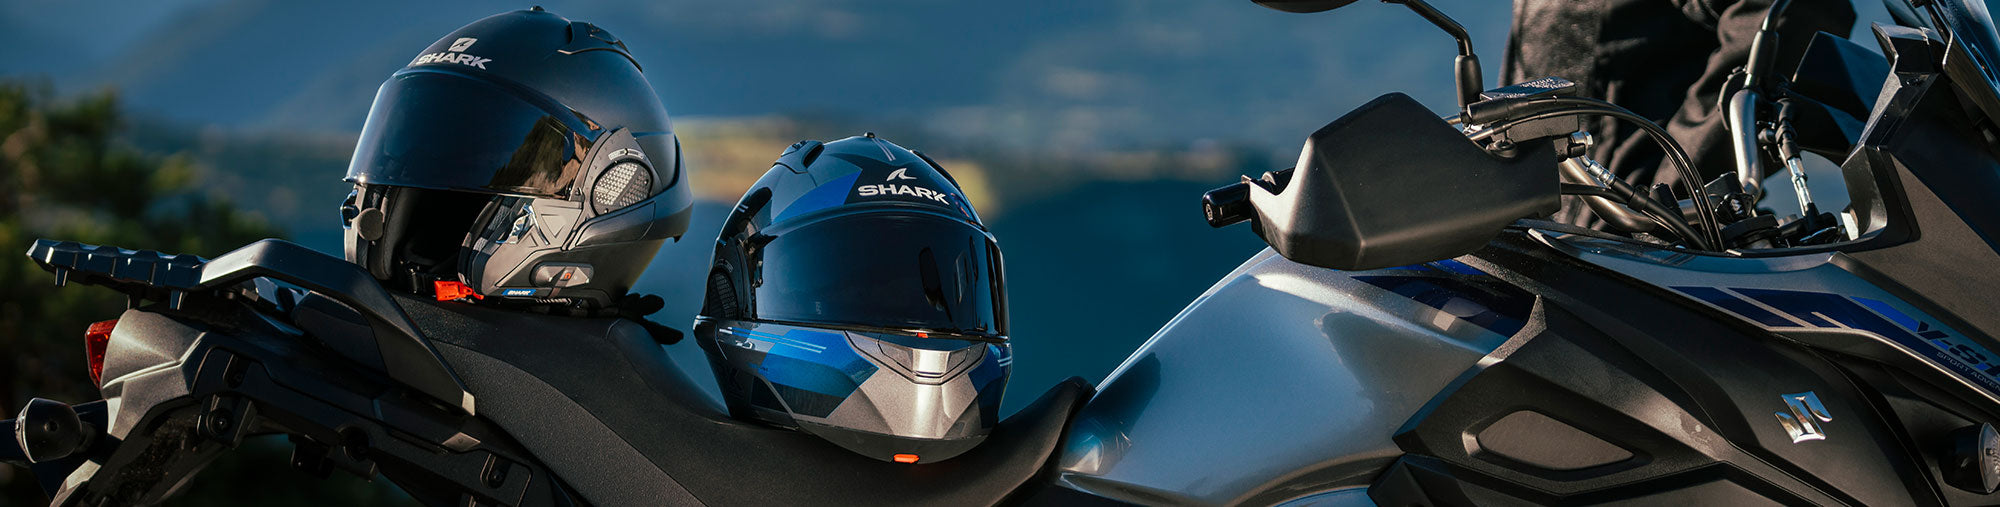 Casco de moto modular - Shark Helmets